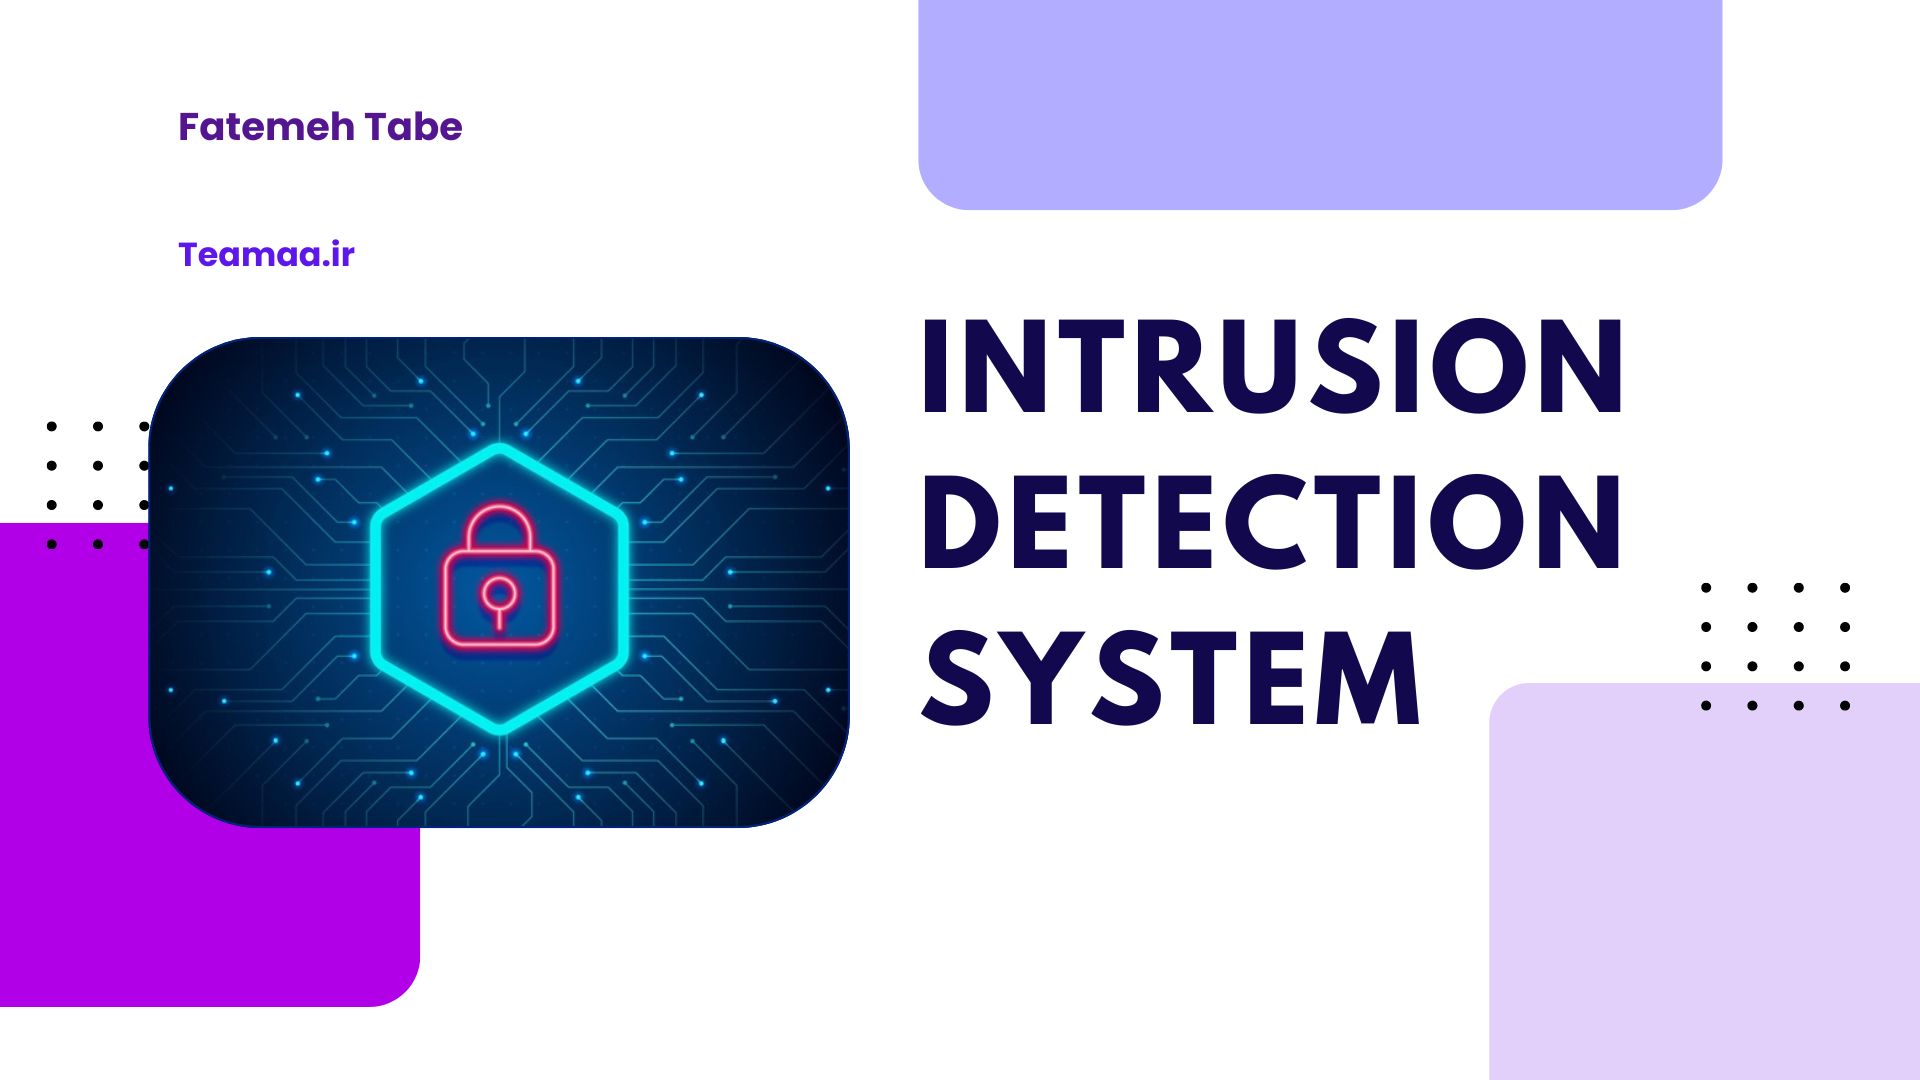 https://teamaa.ir/Assets/Images/Blog/TEAMAA-(c7uD9DKg)_Intrusion Detection System.jpg